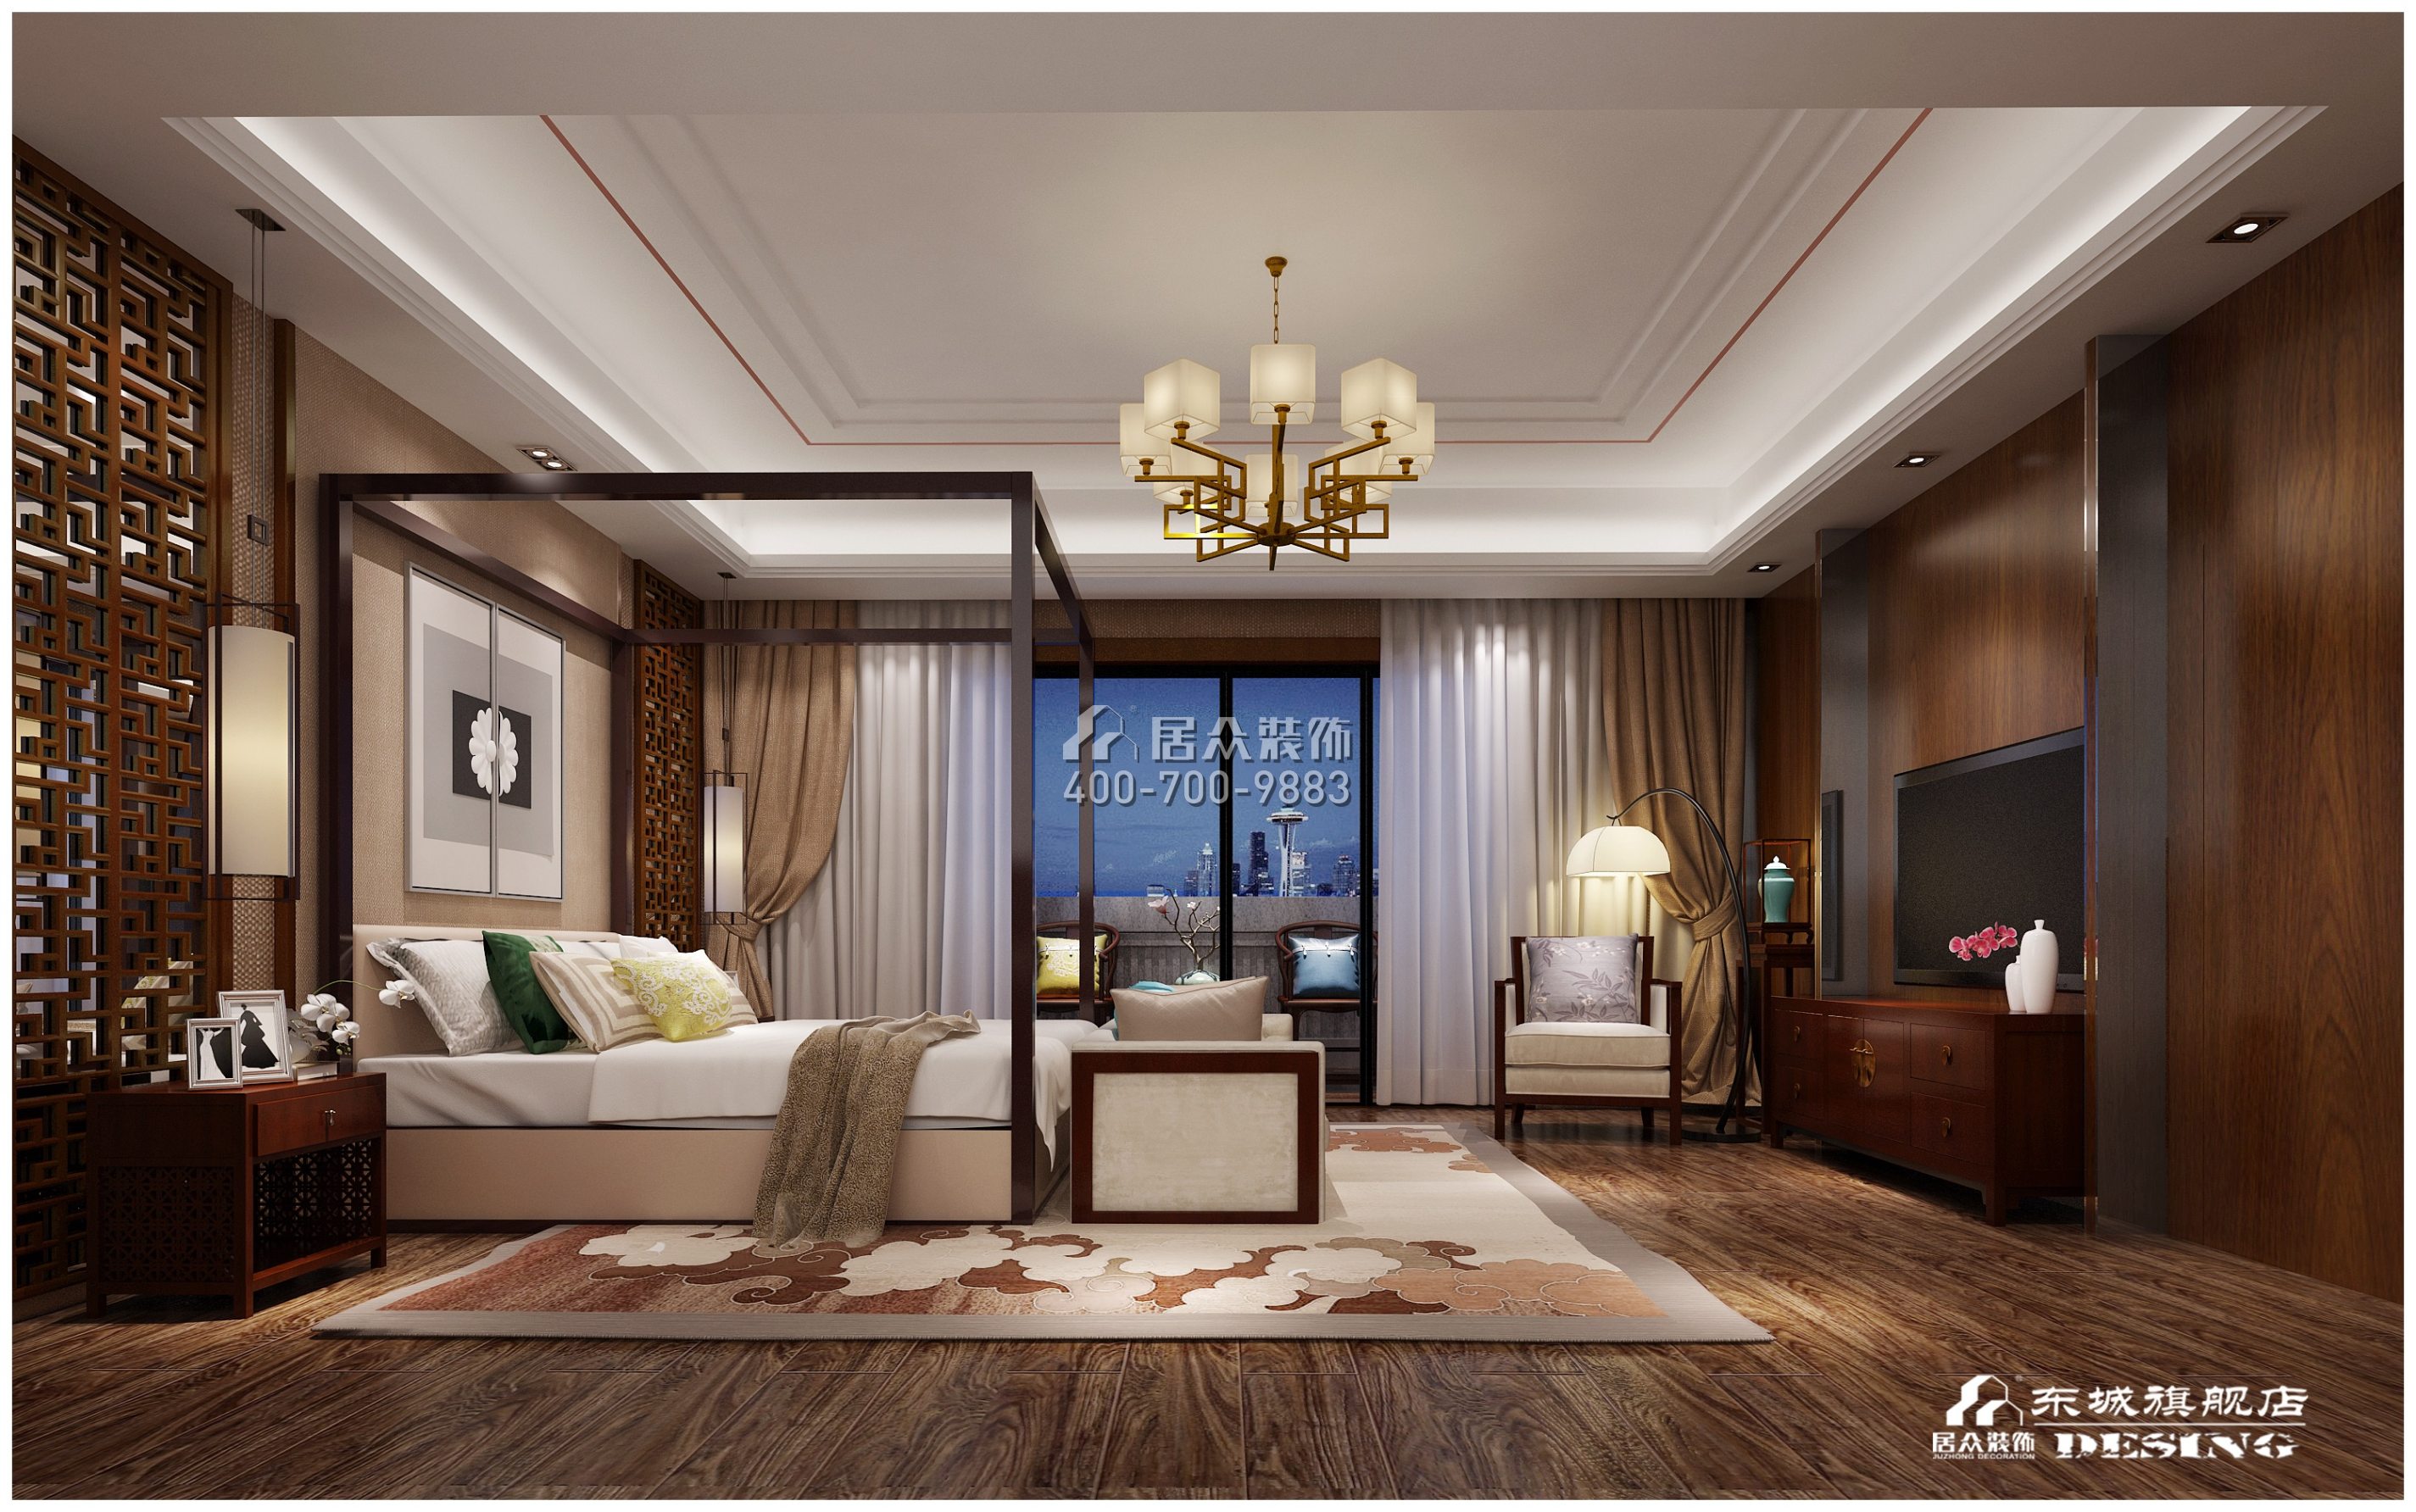 藏珑湖上国际600平方米中式风格别墅户型卧室装修效果图